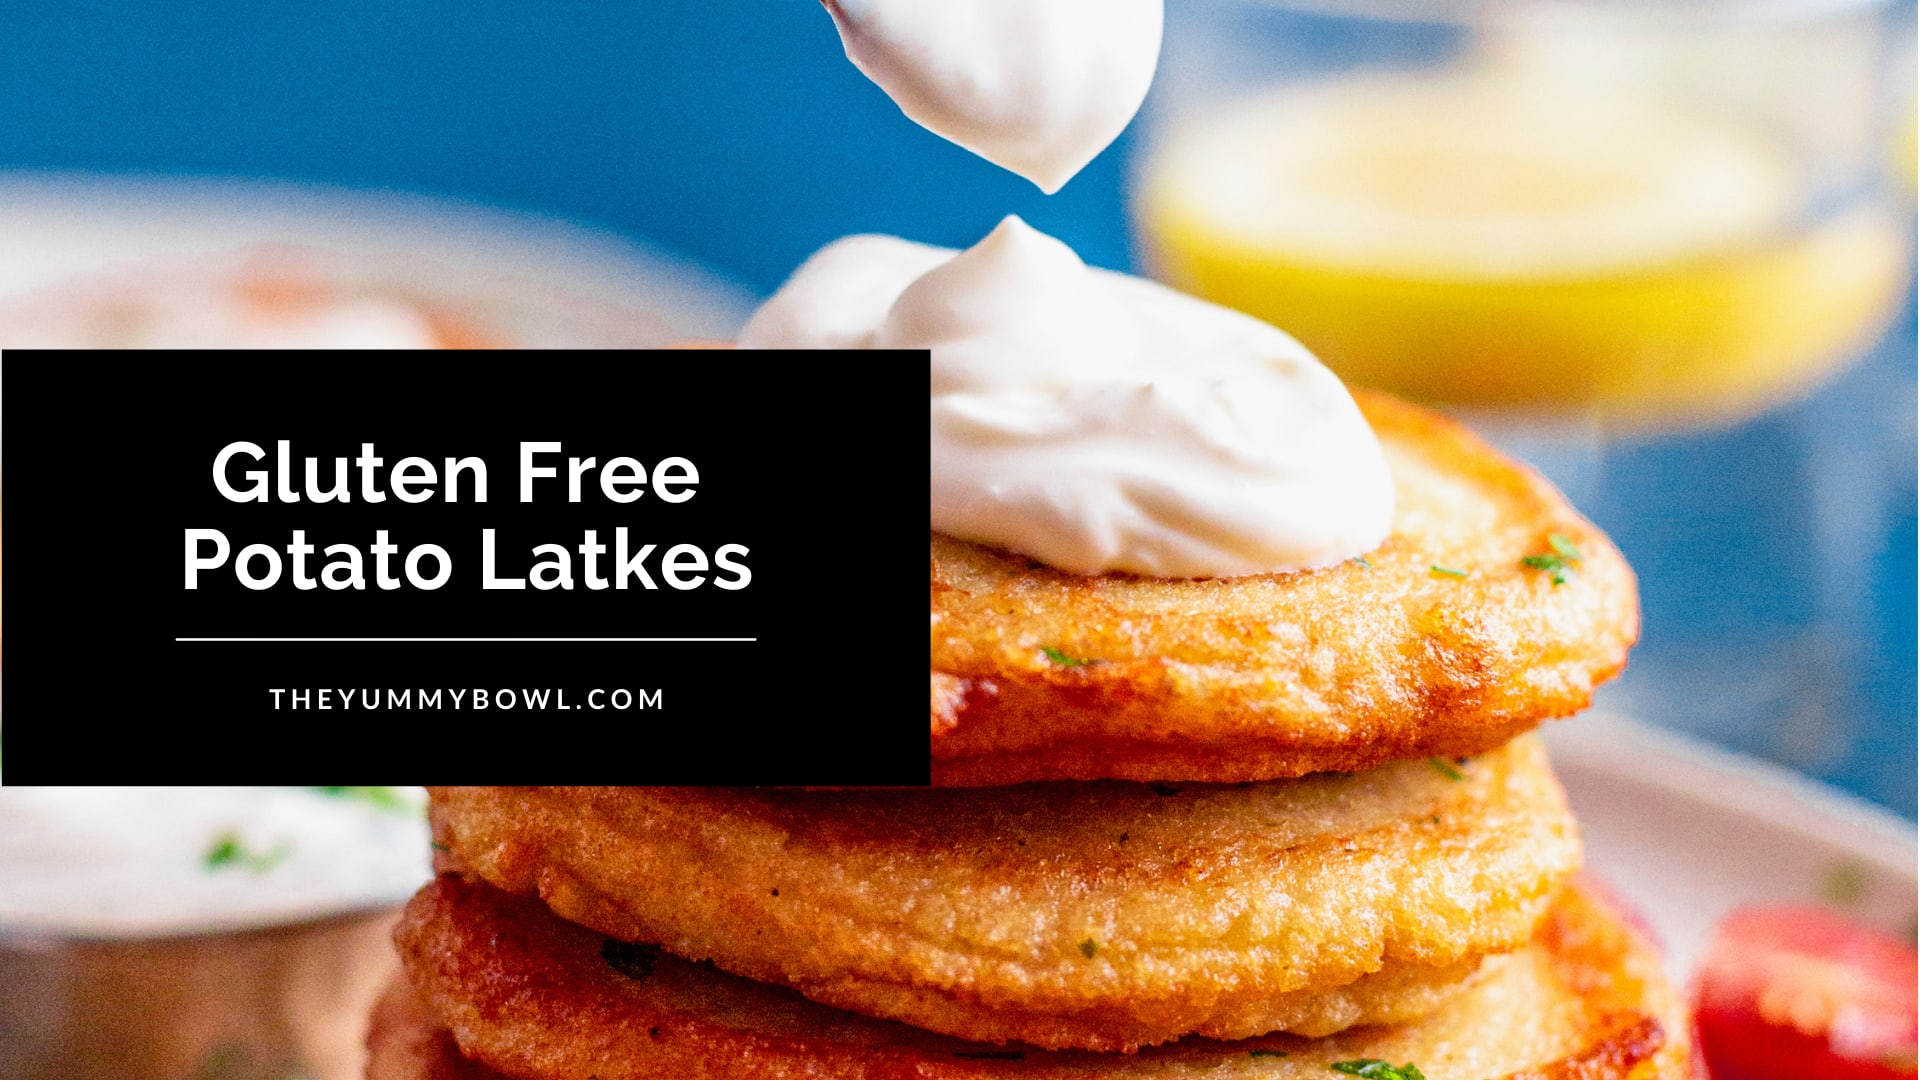 Gluten free Potato Pancakes (Whole30 option) - Perchance to Cook